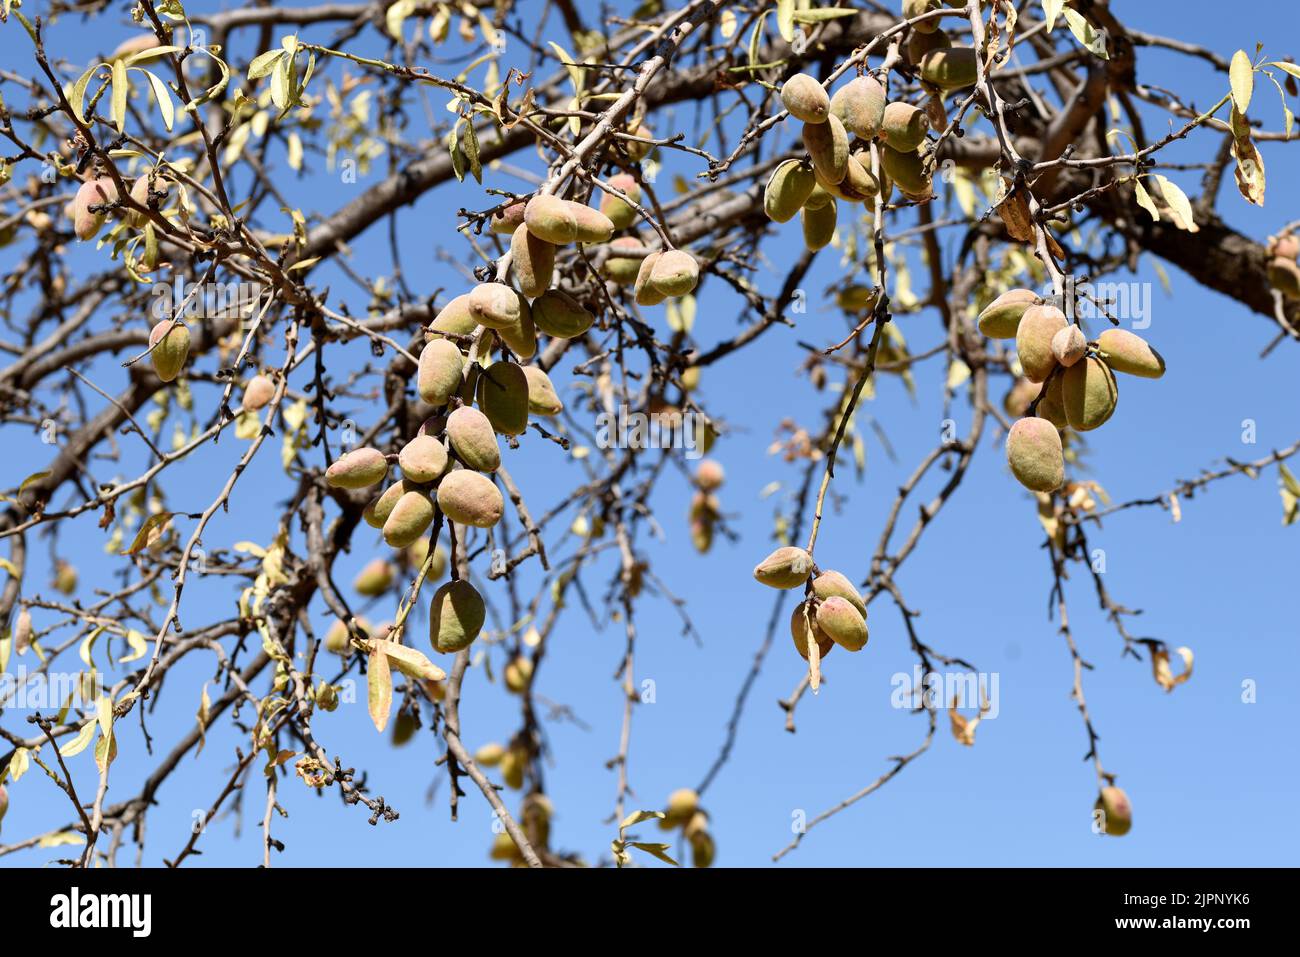 Detalle de las ramas del árbol del almendro cargadas de sus frutos a finales de agosto Stock Photo